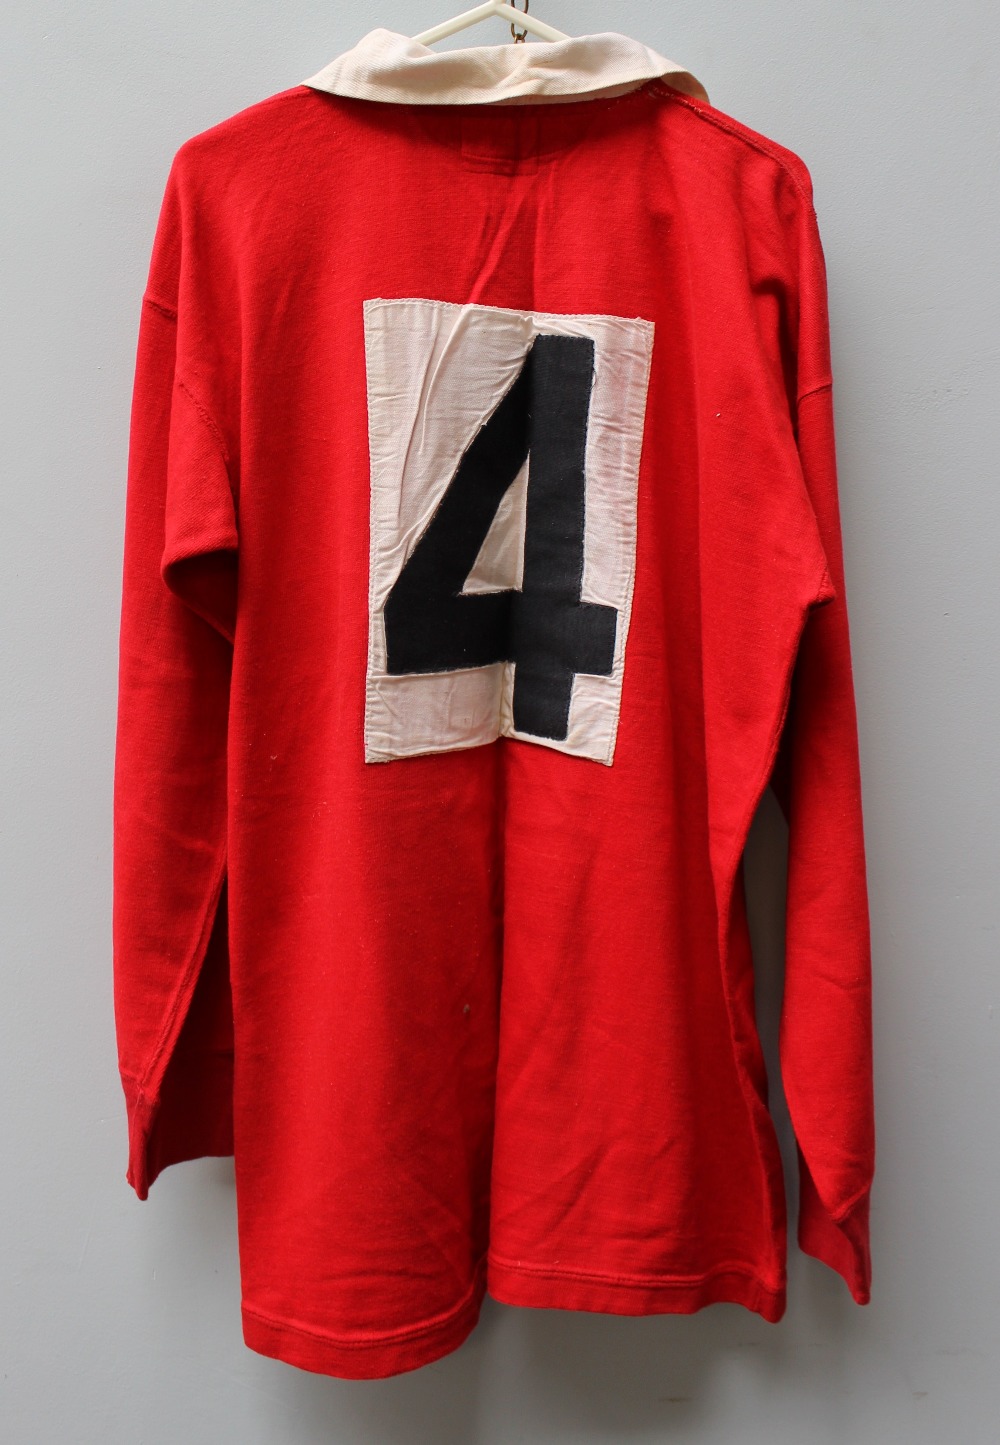 Allan Martin - A Welsh International match worn jersey, - Image 3 of 3